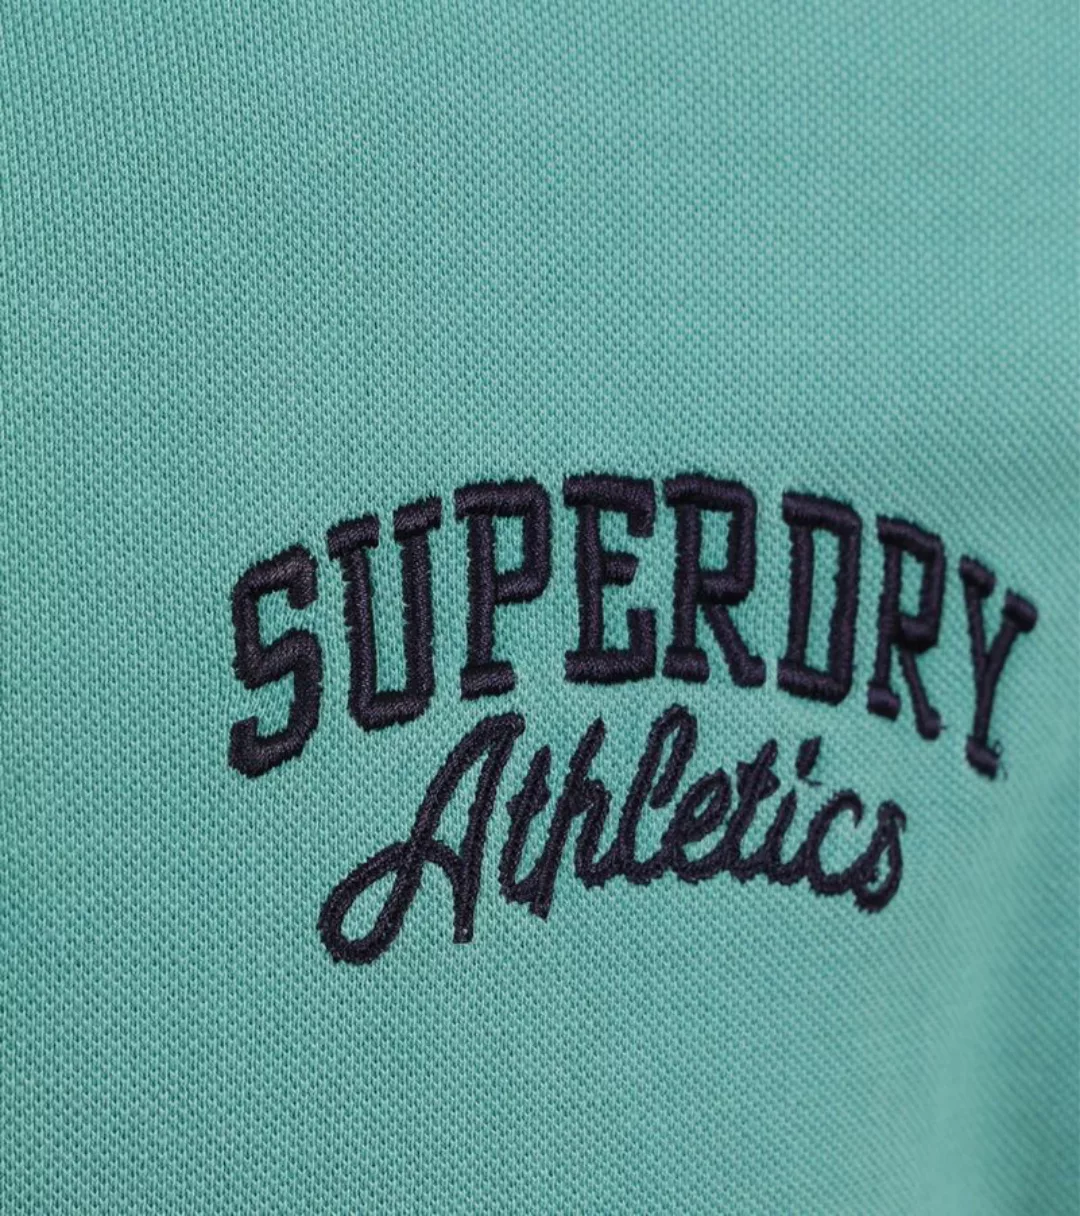 Superdry Poloshirt SD-VINTAGE SUPERSTATE POLO günstig online kaufen